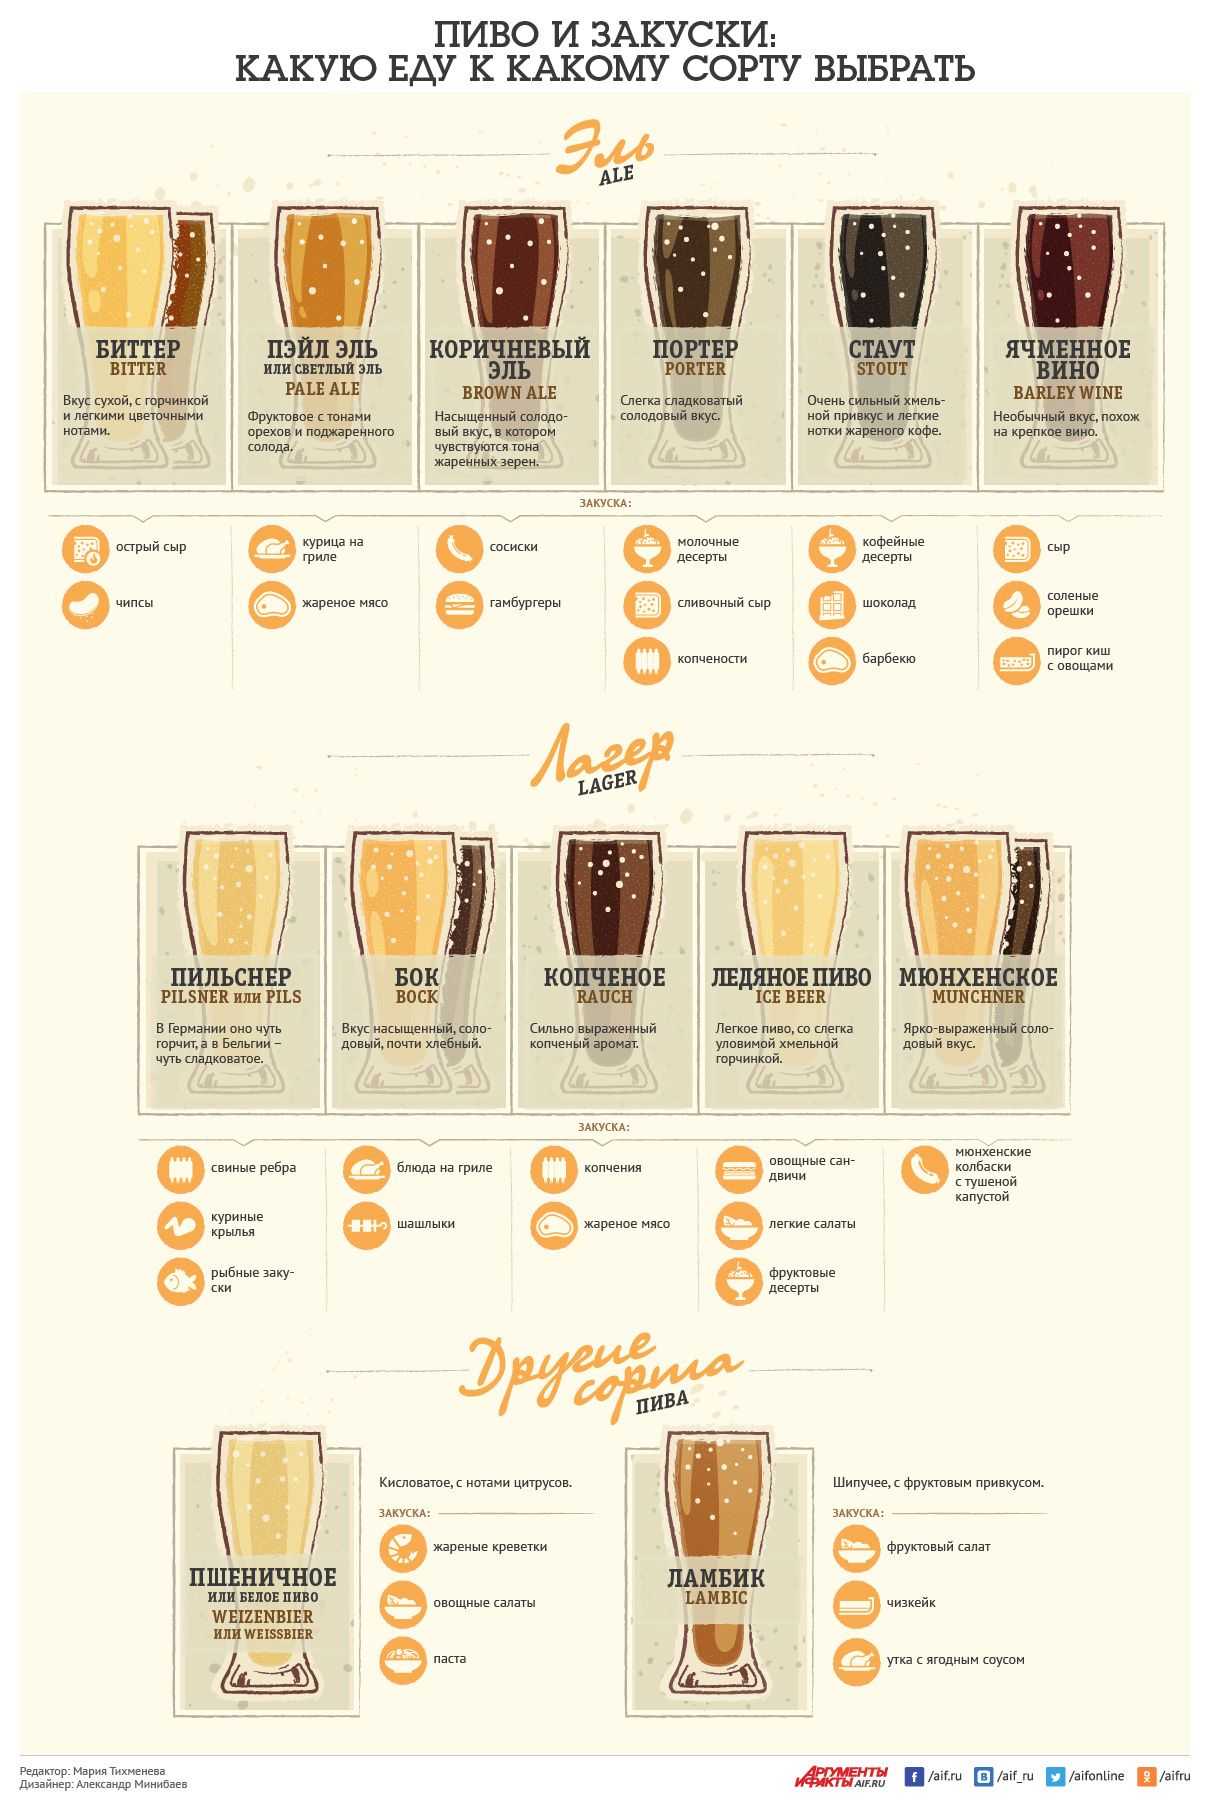 Пиво трехгорное: история и обзор видов